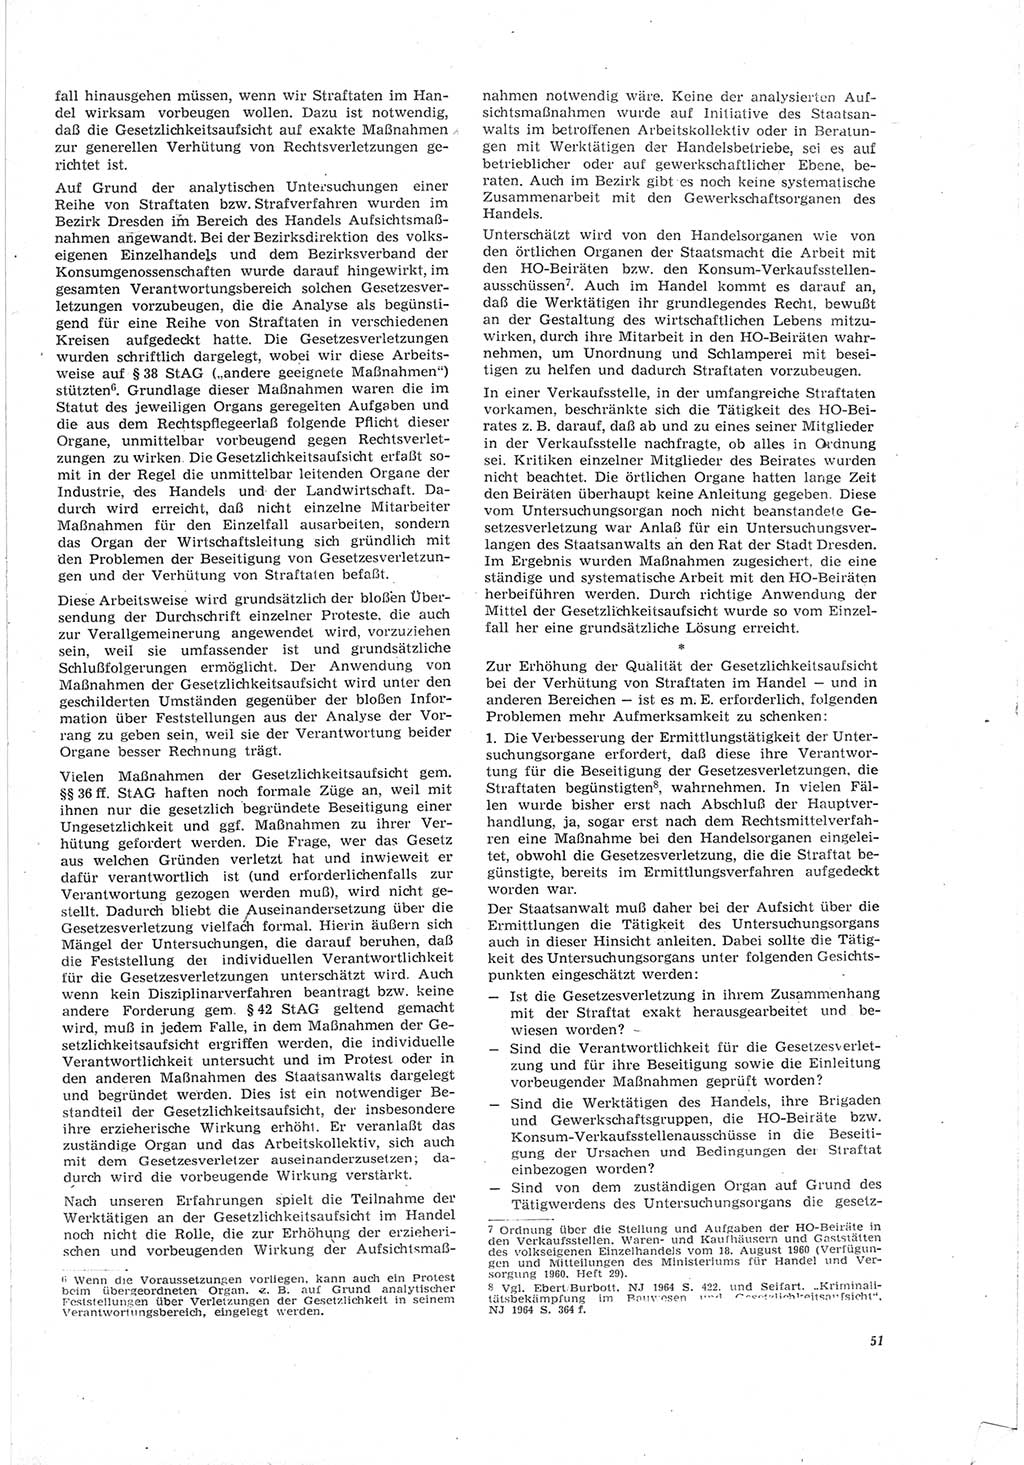 Neue Justiz (NJ), Zeitschrift für Recht und Rechtswissenschaft [Deutsche Demokratische Republik (DDR)], 19. Jahrgang 1965, Seite 51 (NJ DDR 1965, S. 51)